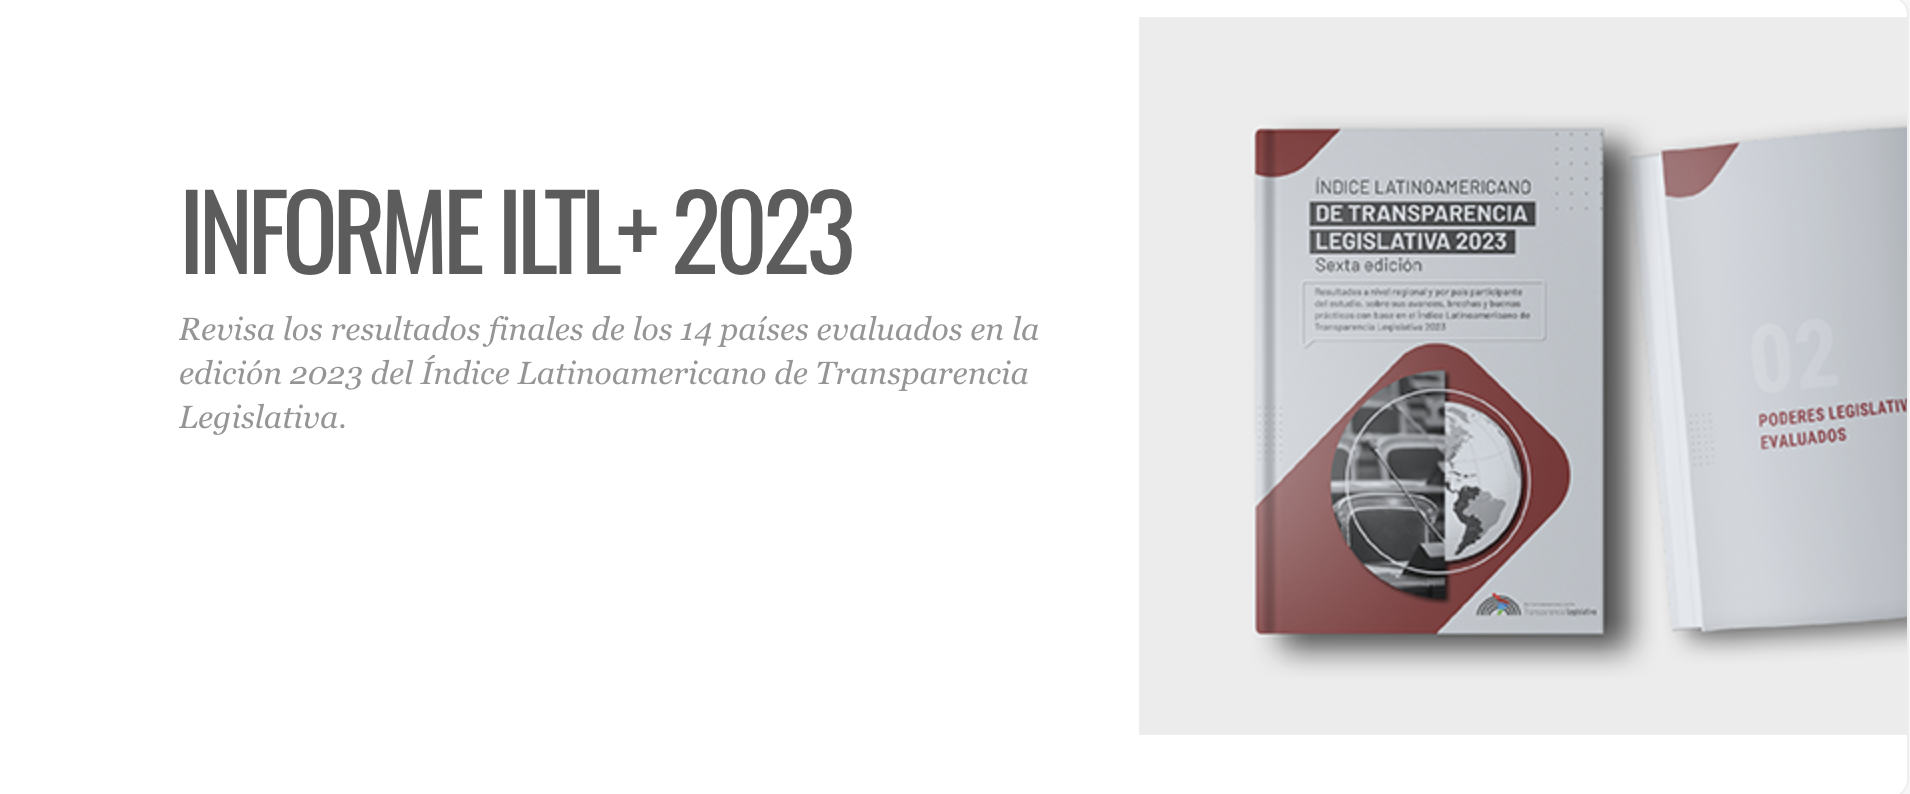 ÍNDICE DE TRANSPARENCIA LEGISLATIVA 2023